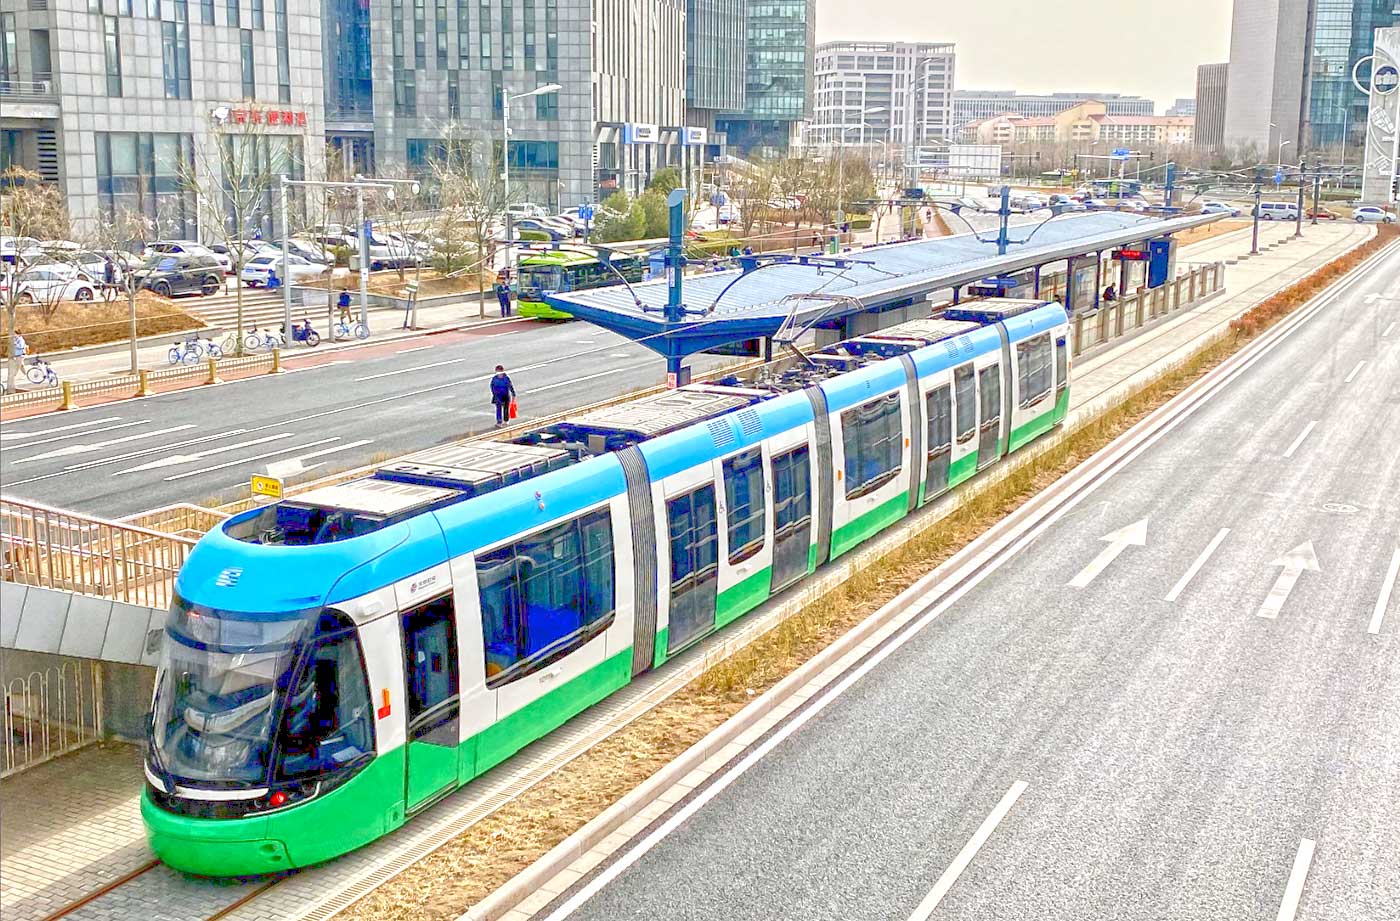 Beijing Public Transport - Tram